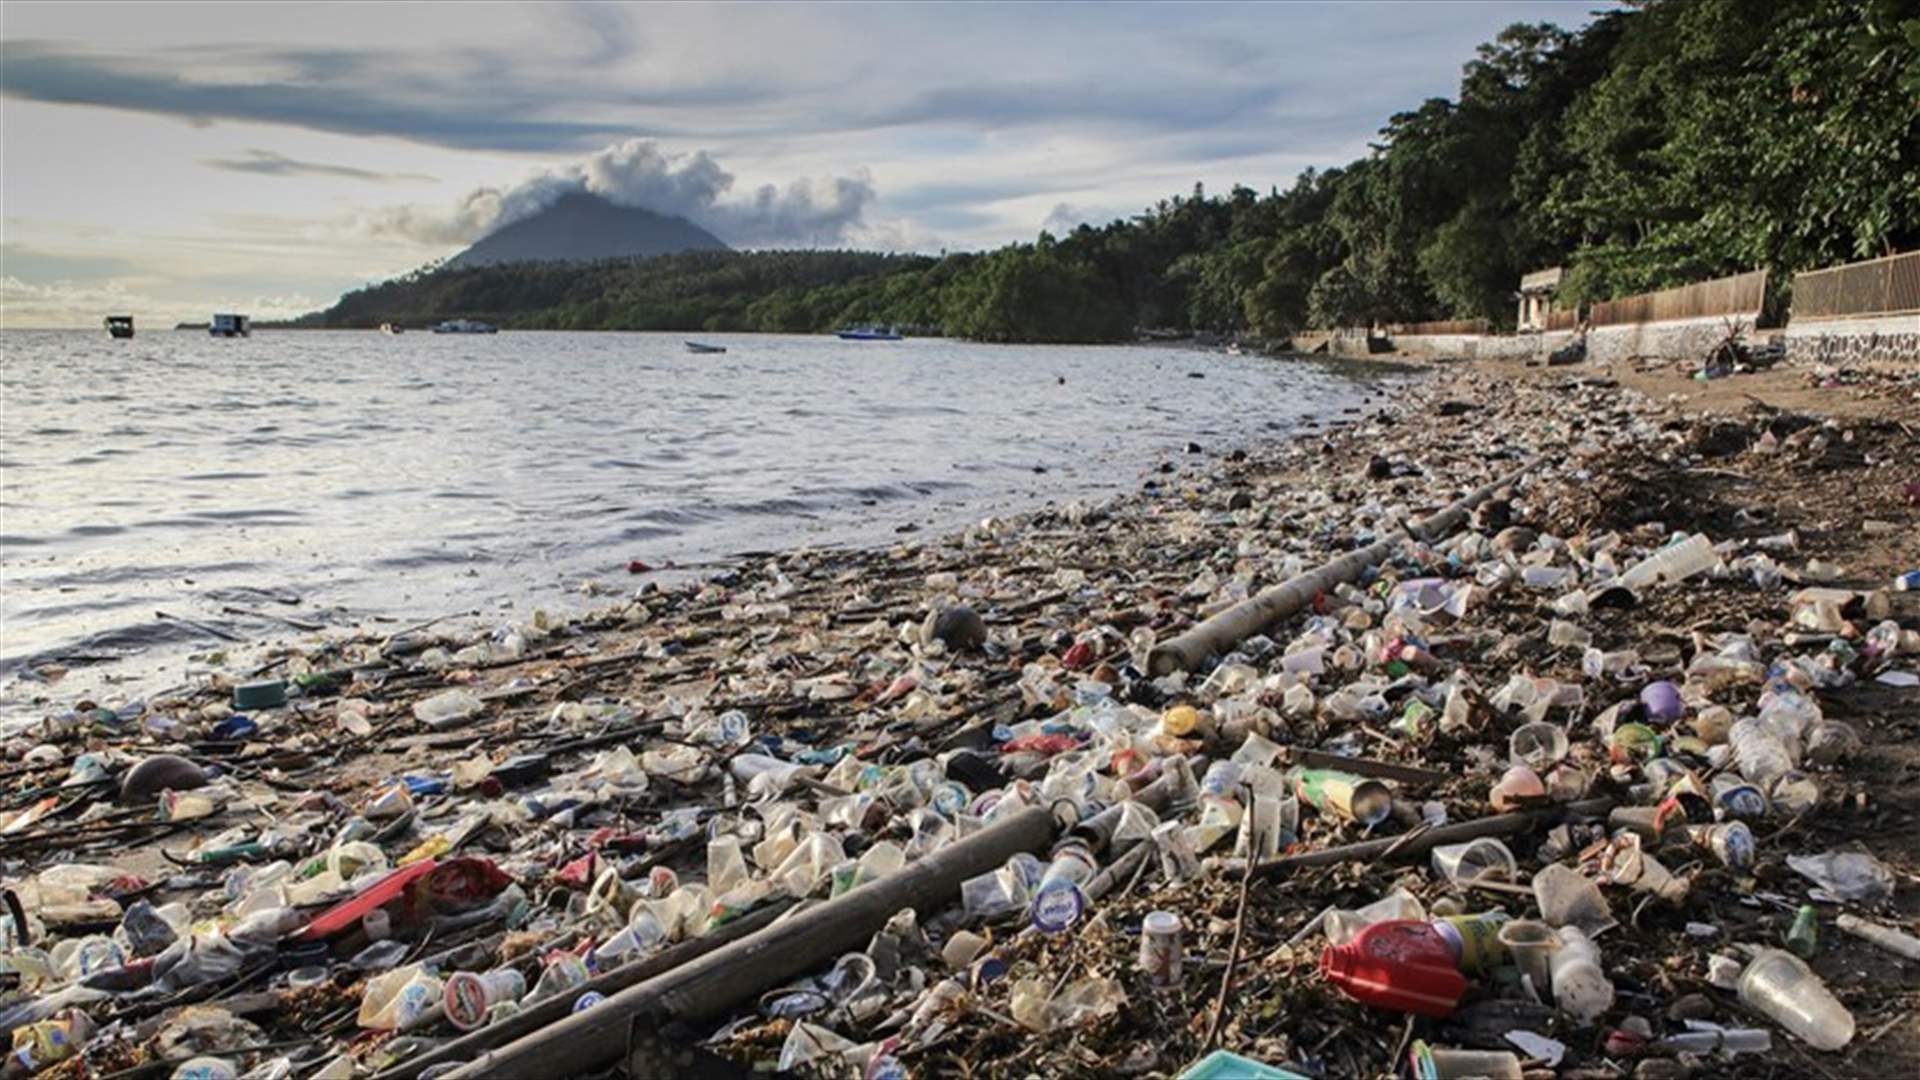 سيدة أعمال إندونيسية تعالج النفايات البلاستيكية وتحولها إلى مصد رزق (فيديو)